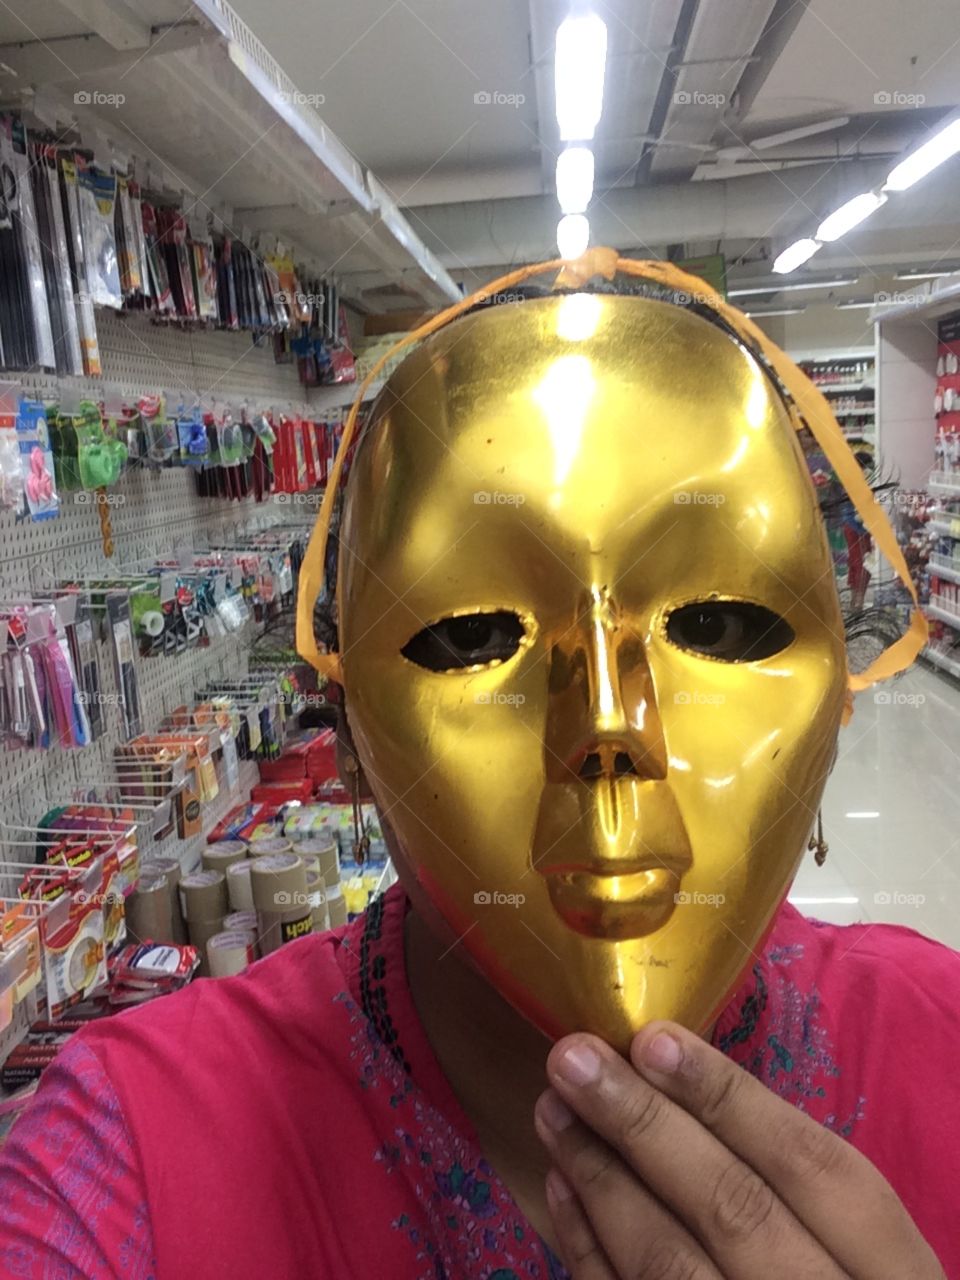 Behind golden mask